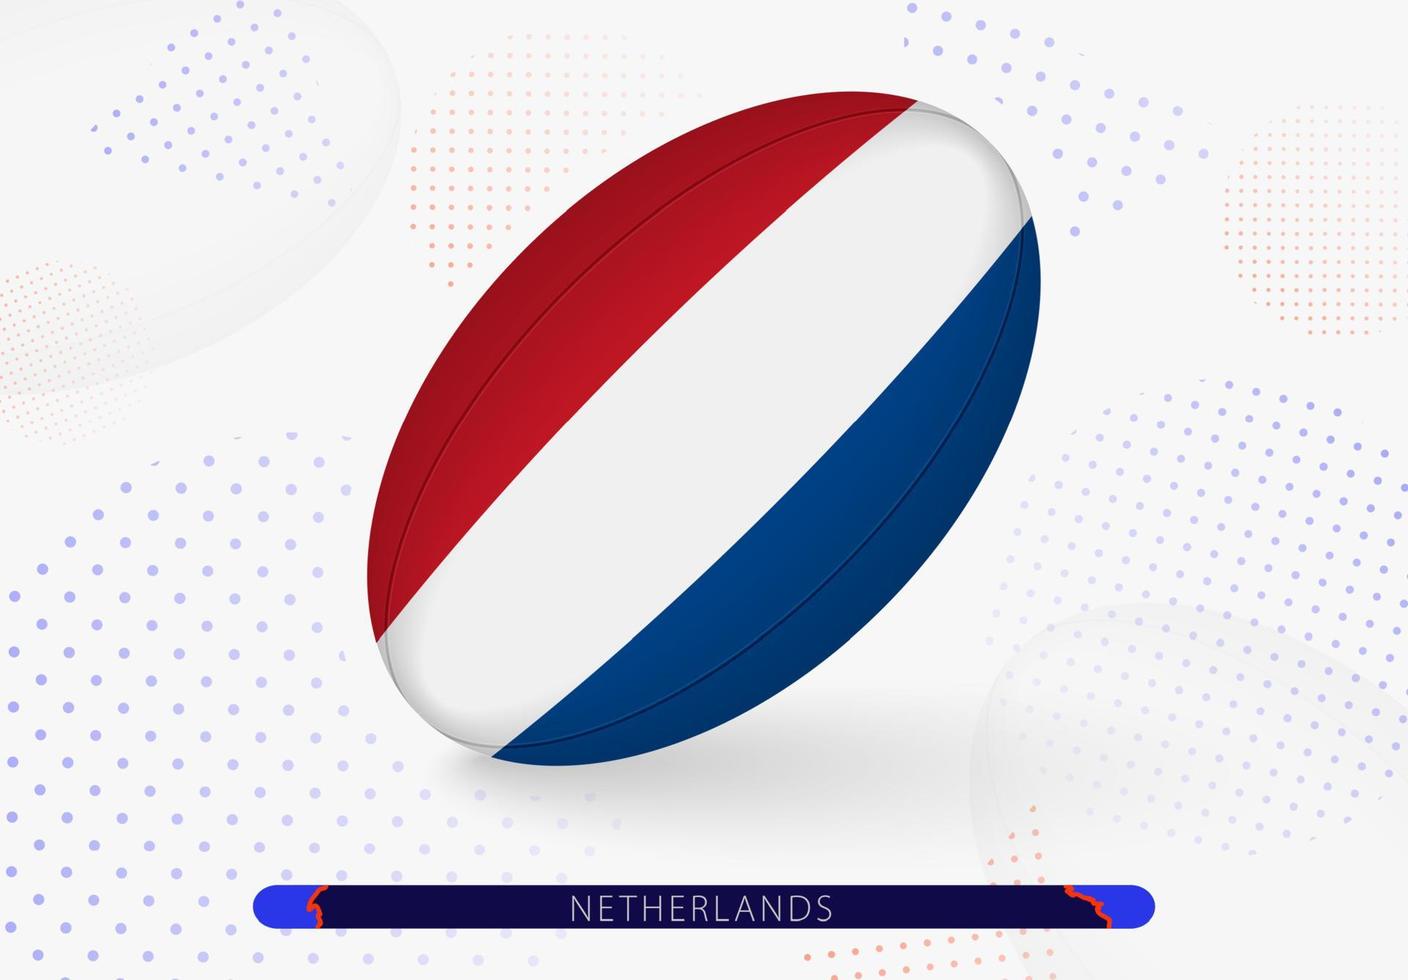 Rugbyball mit der Flagge der Niederlande darauf. Ausrüstung für das Rugby-Team der Niederlande. vektor